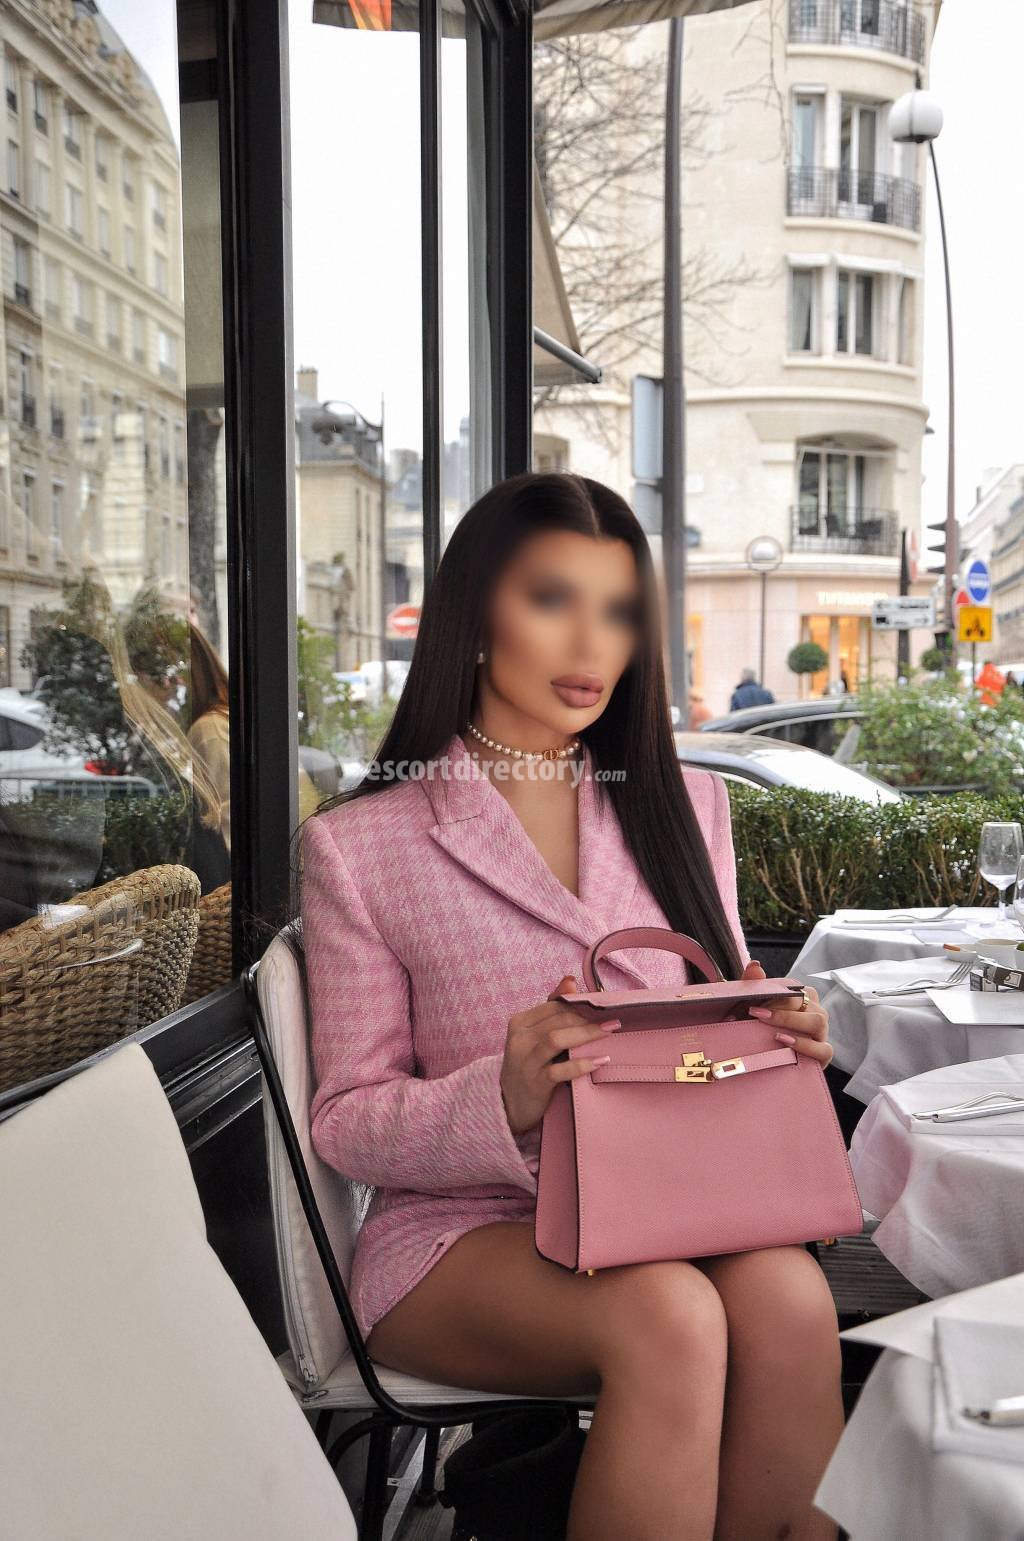 Ayah-Bella Großer Hintern escort in Paris offers In den Mund spritzen services